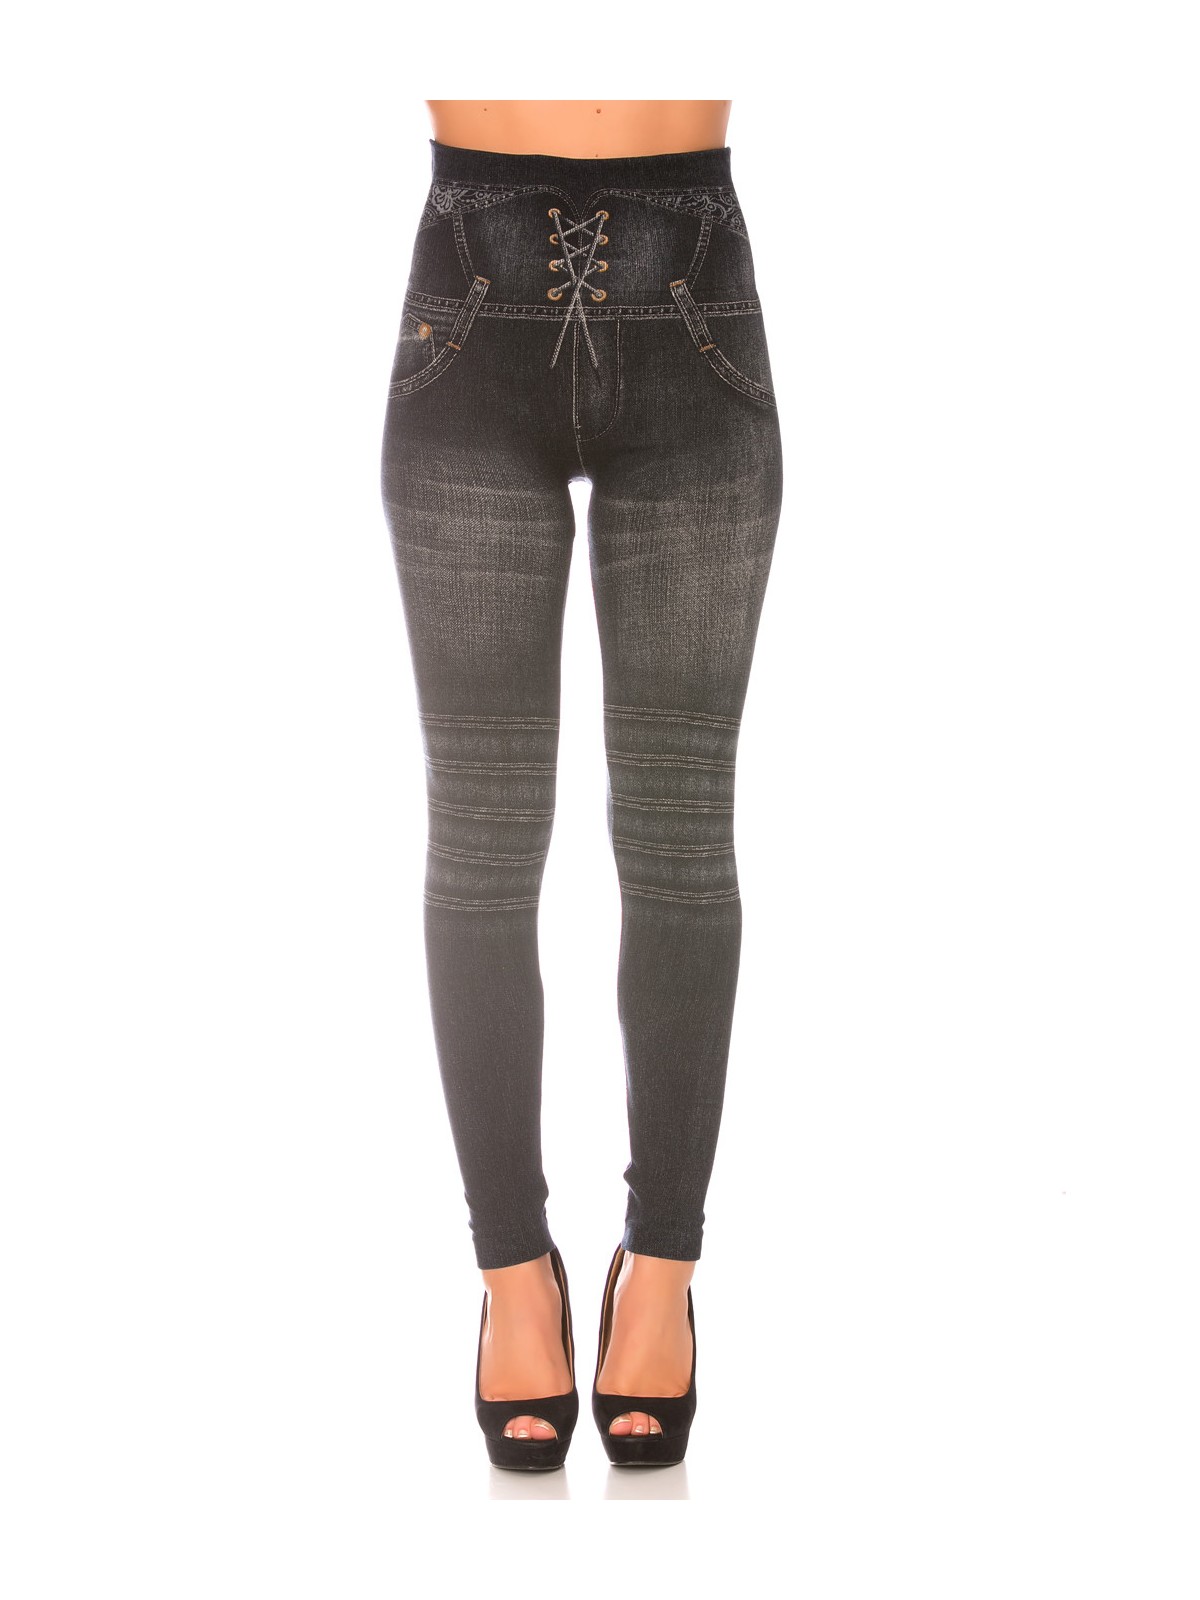 Leggings minceur noir style jeans taille haute et effet lien croisé. Effet Push-Up - 1